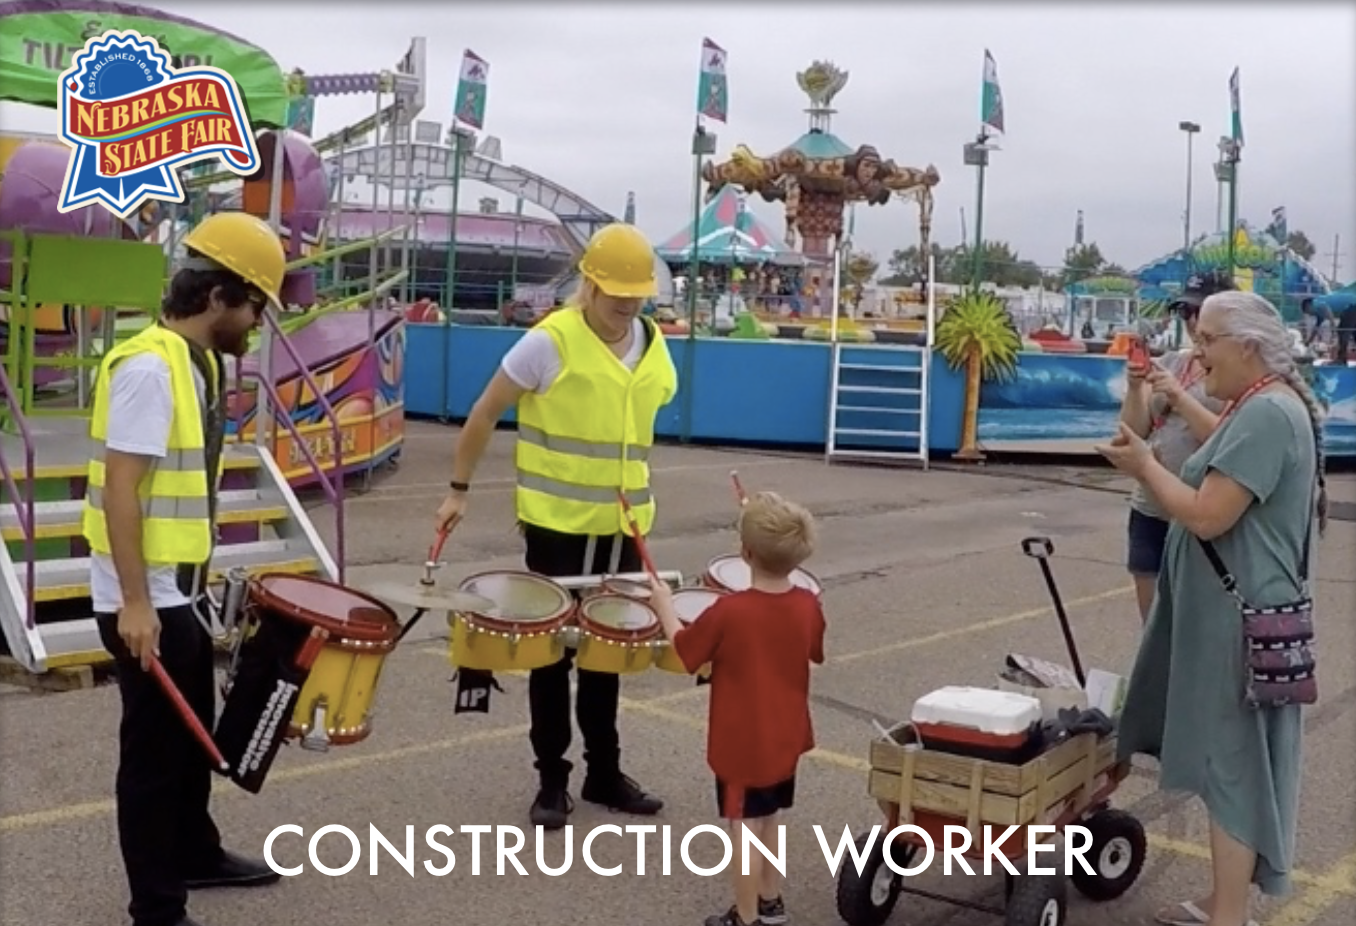 Fair Construction Worker